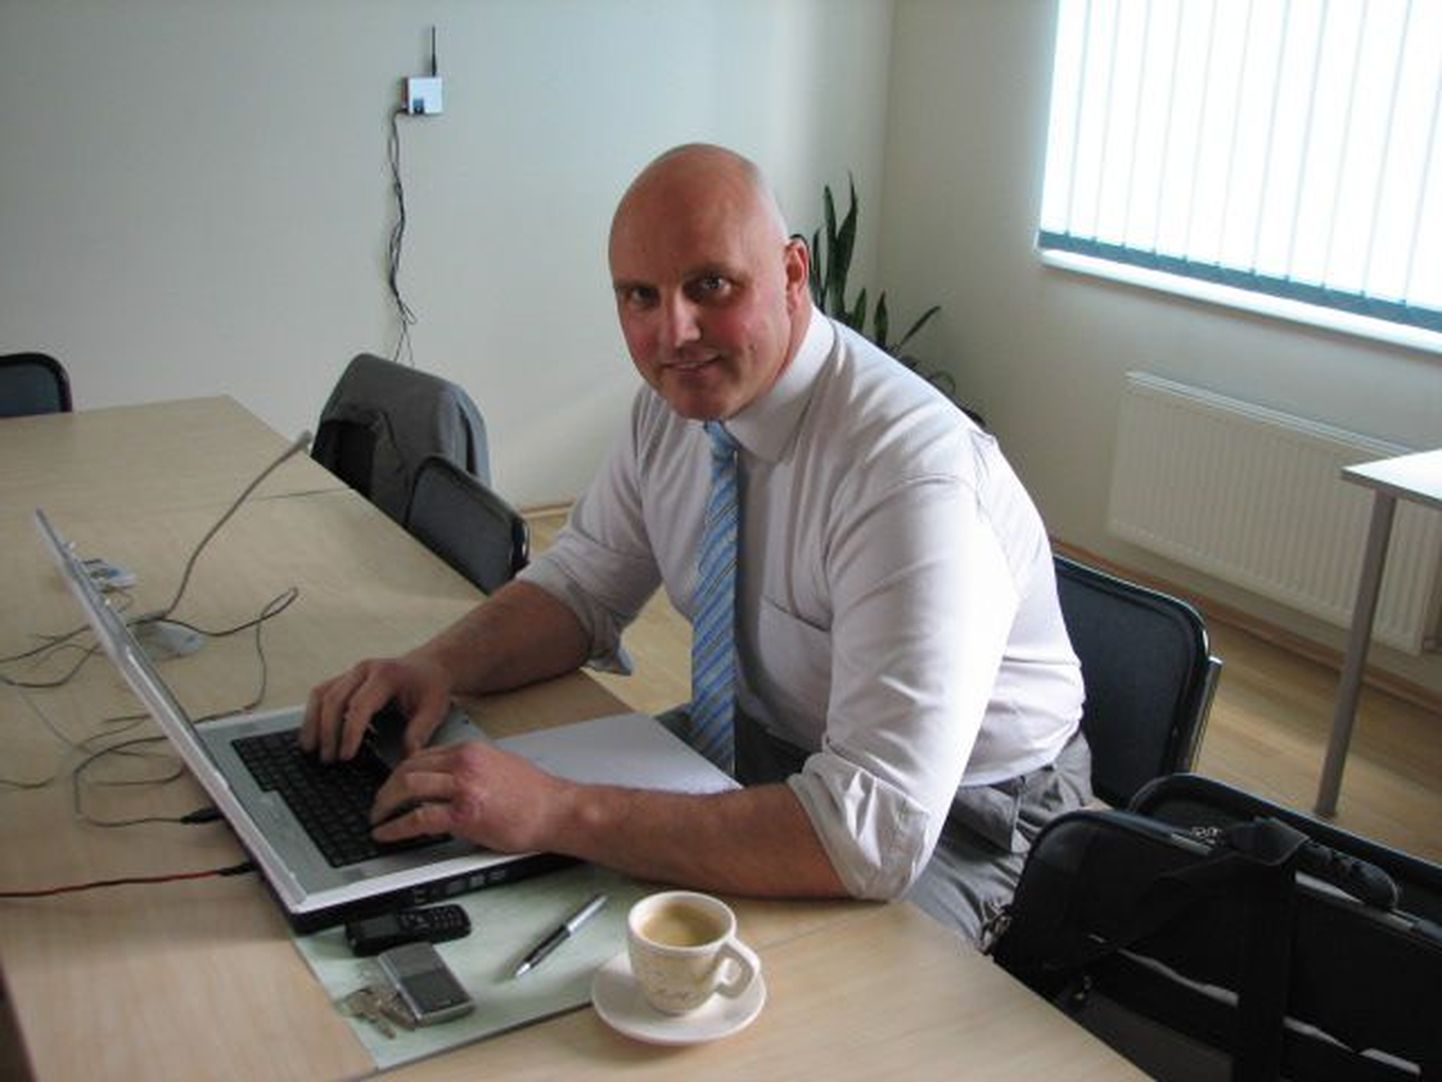 Hendrik Agur viibis online-väitluse ajal Karksi-Nuias, kus ta käis ühtlasi Karksi vallavolikogu esimehe kohuseid täitmas.